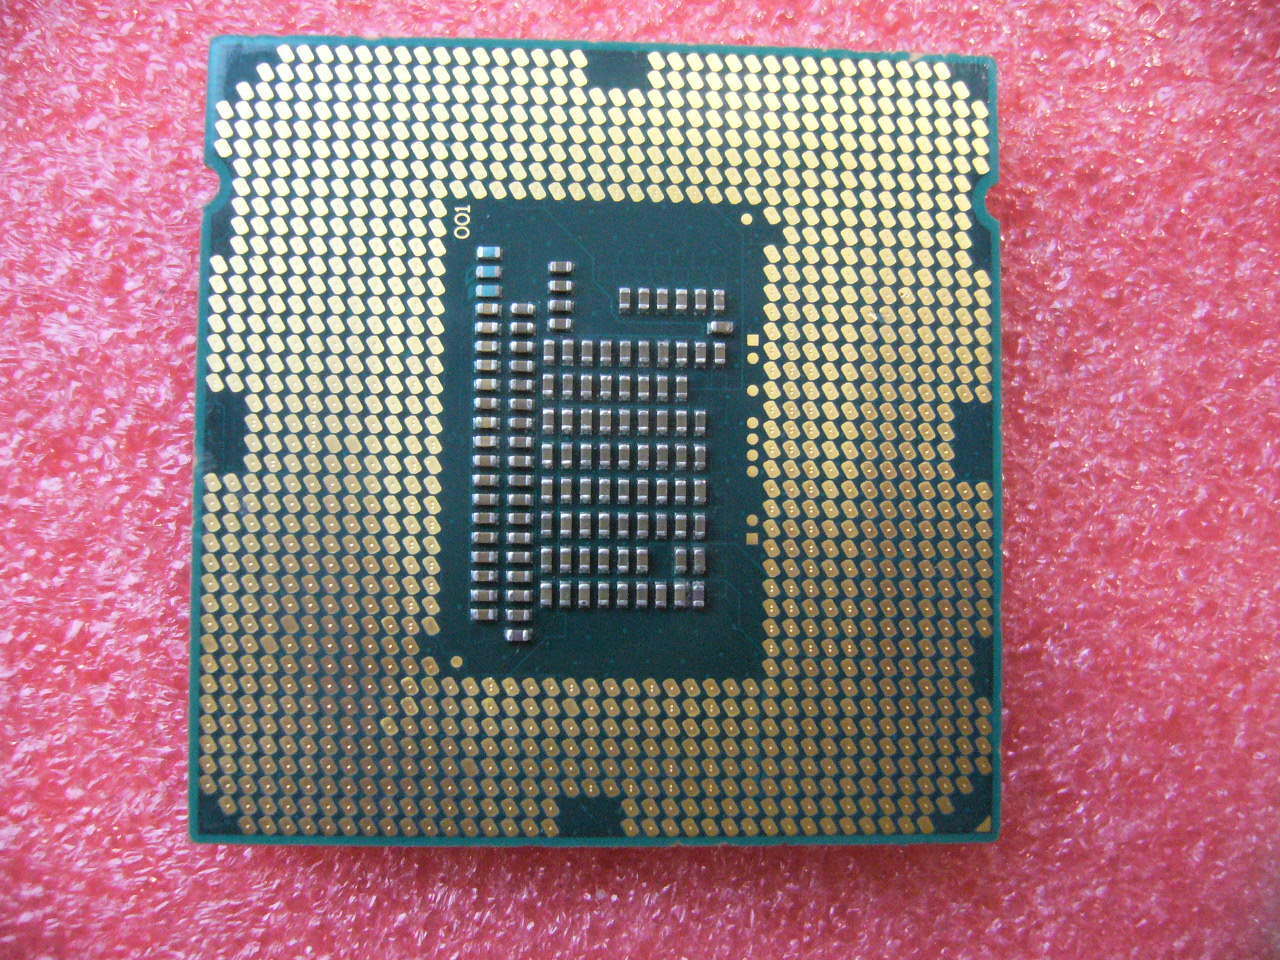 QTY 1x INTEL Pentium CPU G2120 3.1GHZ/3MB LGA1155 SR0UF - zum Schließen ins Bild klicken